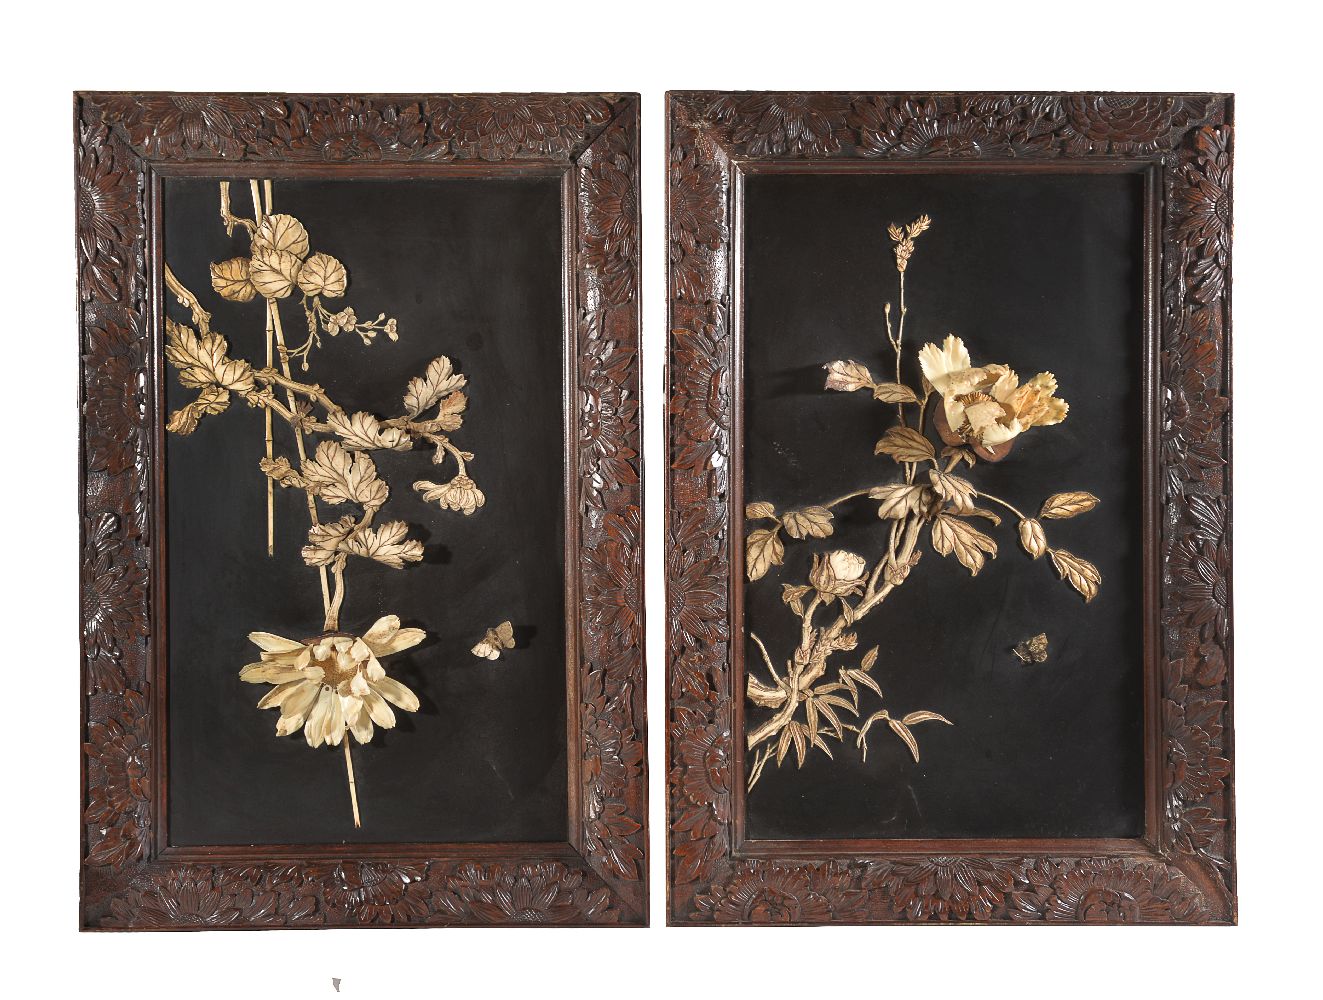 ϒ A pair of Japanese lacquer and ivory panels